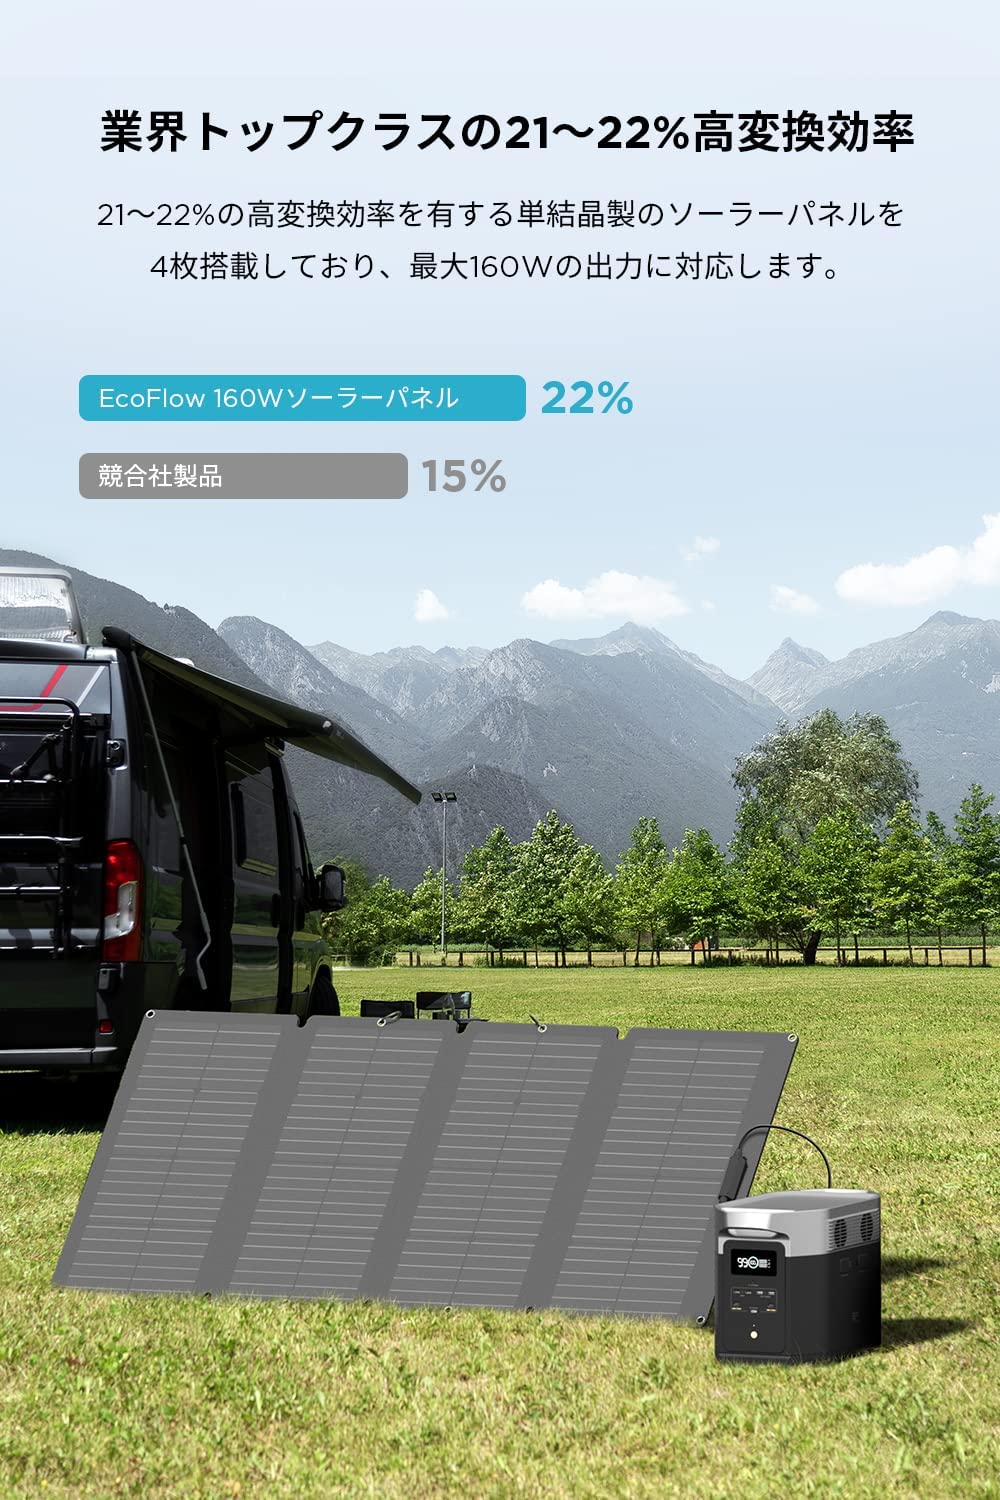 EcoFlow ソーラーパネル 160W